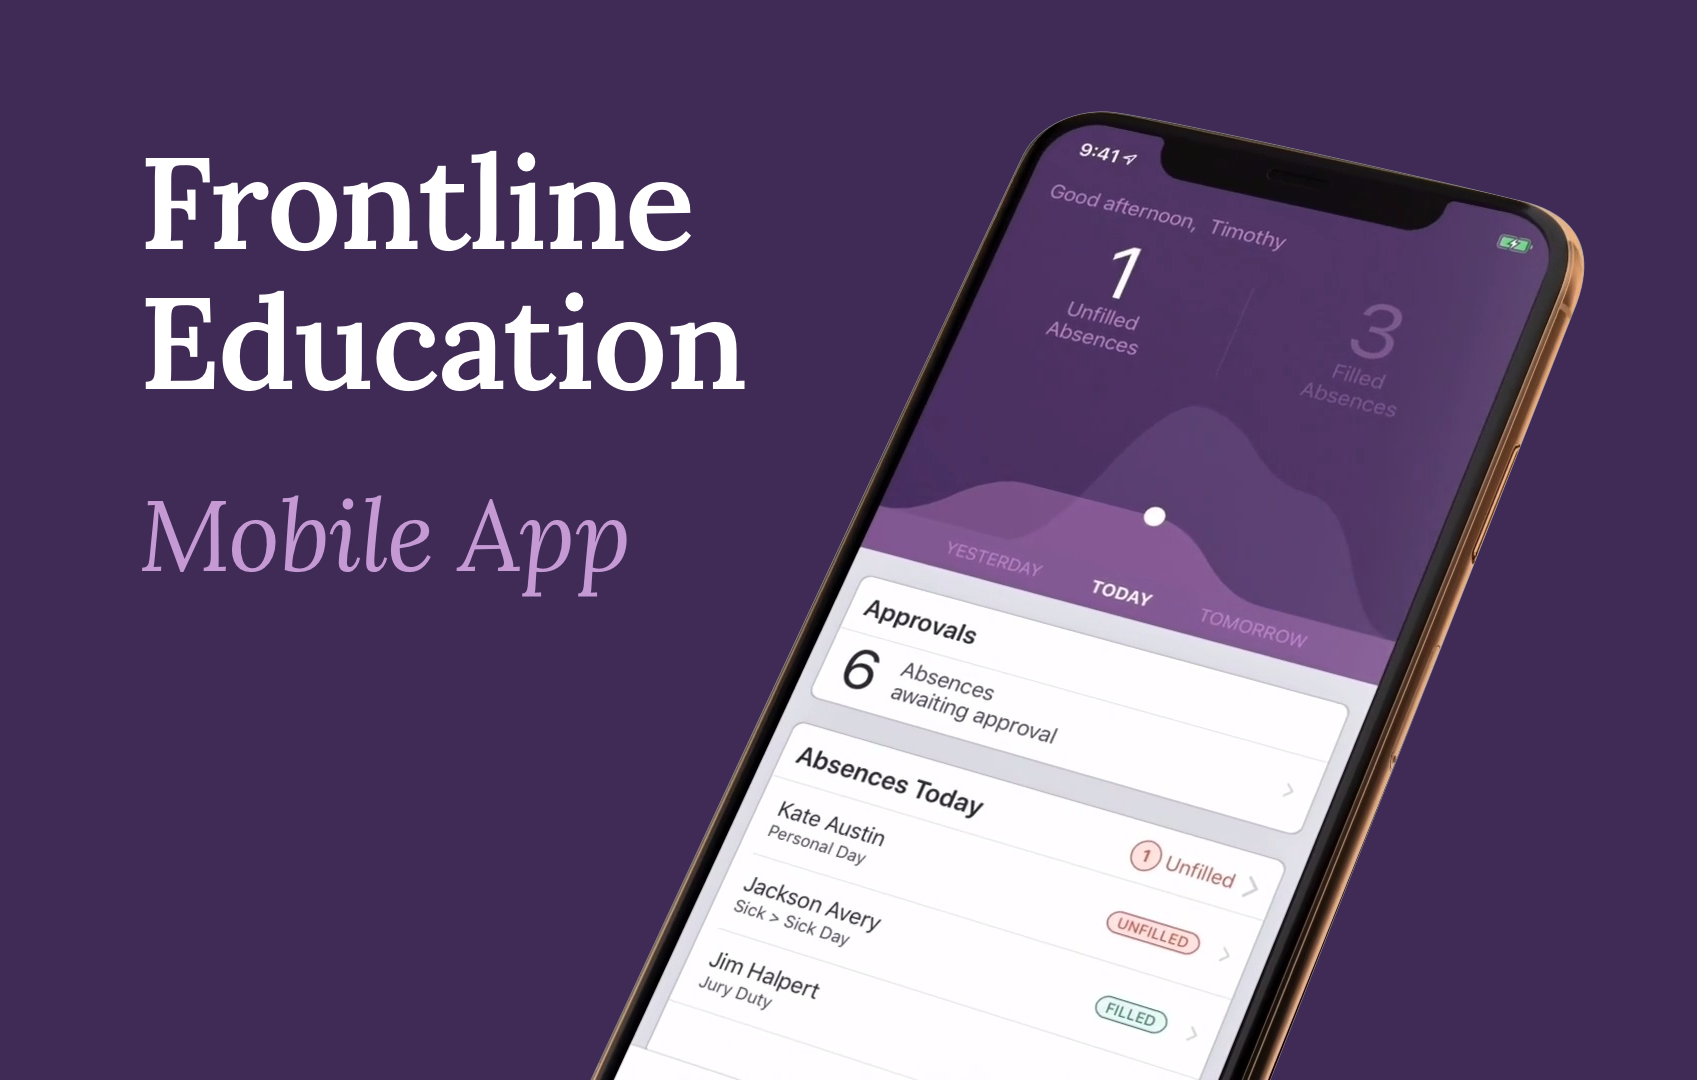 Frontline Education Mobile App